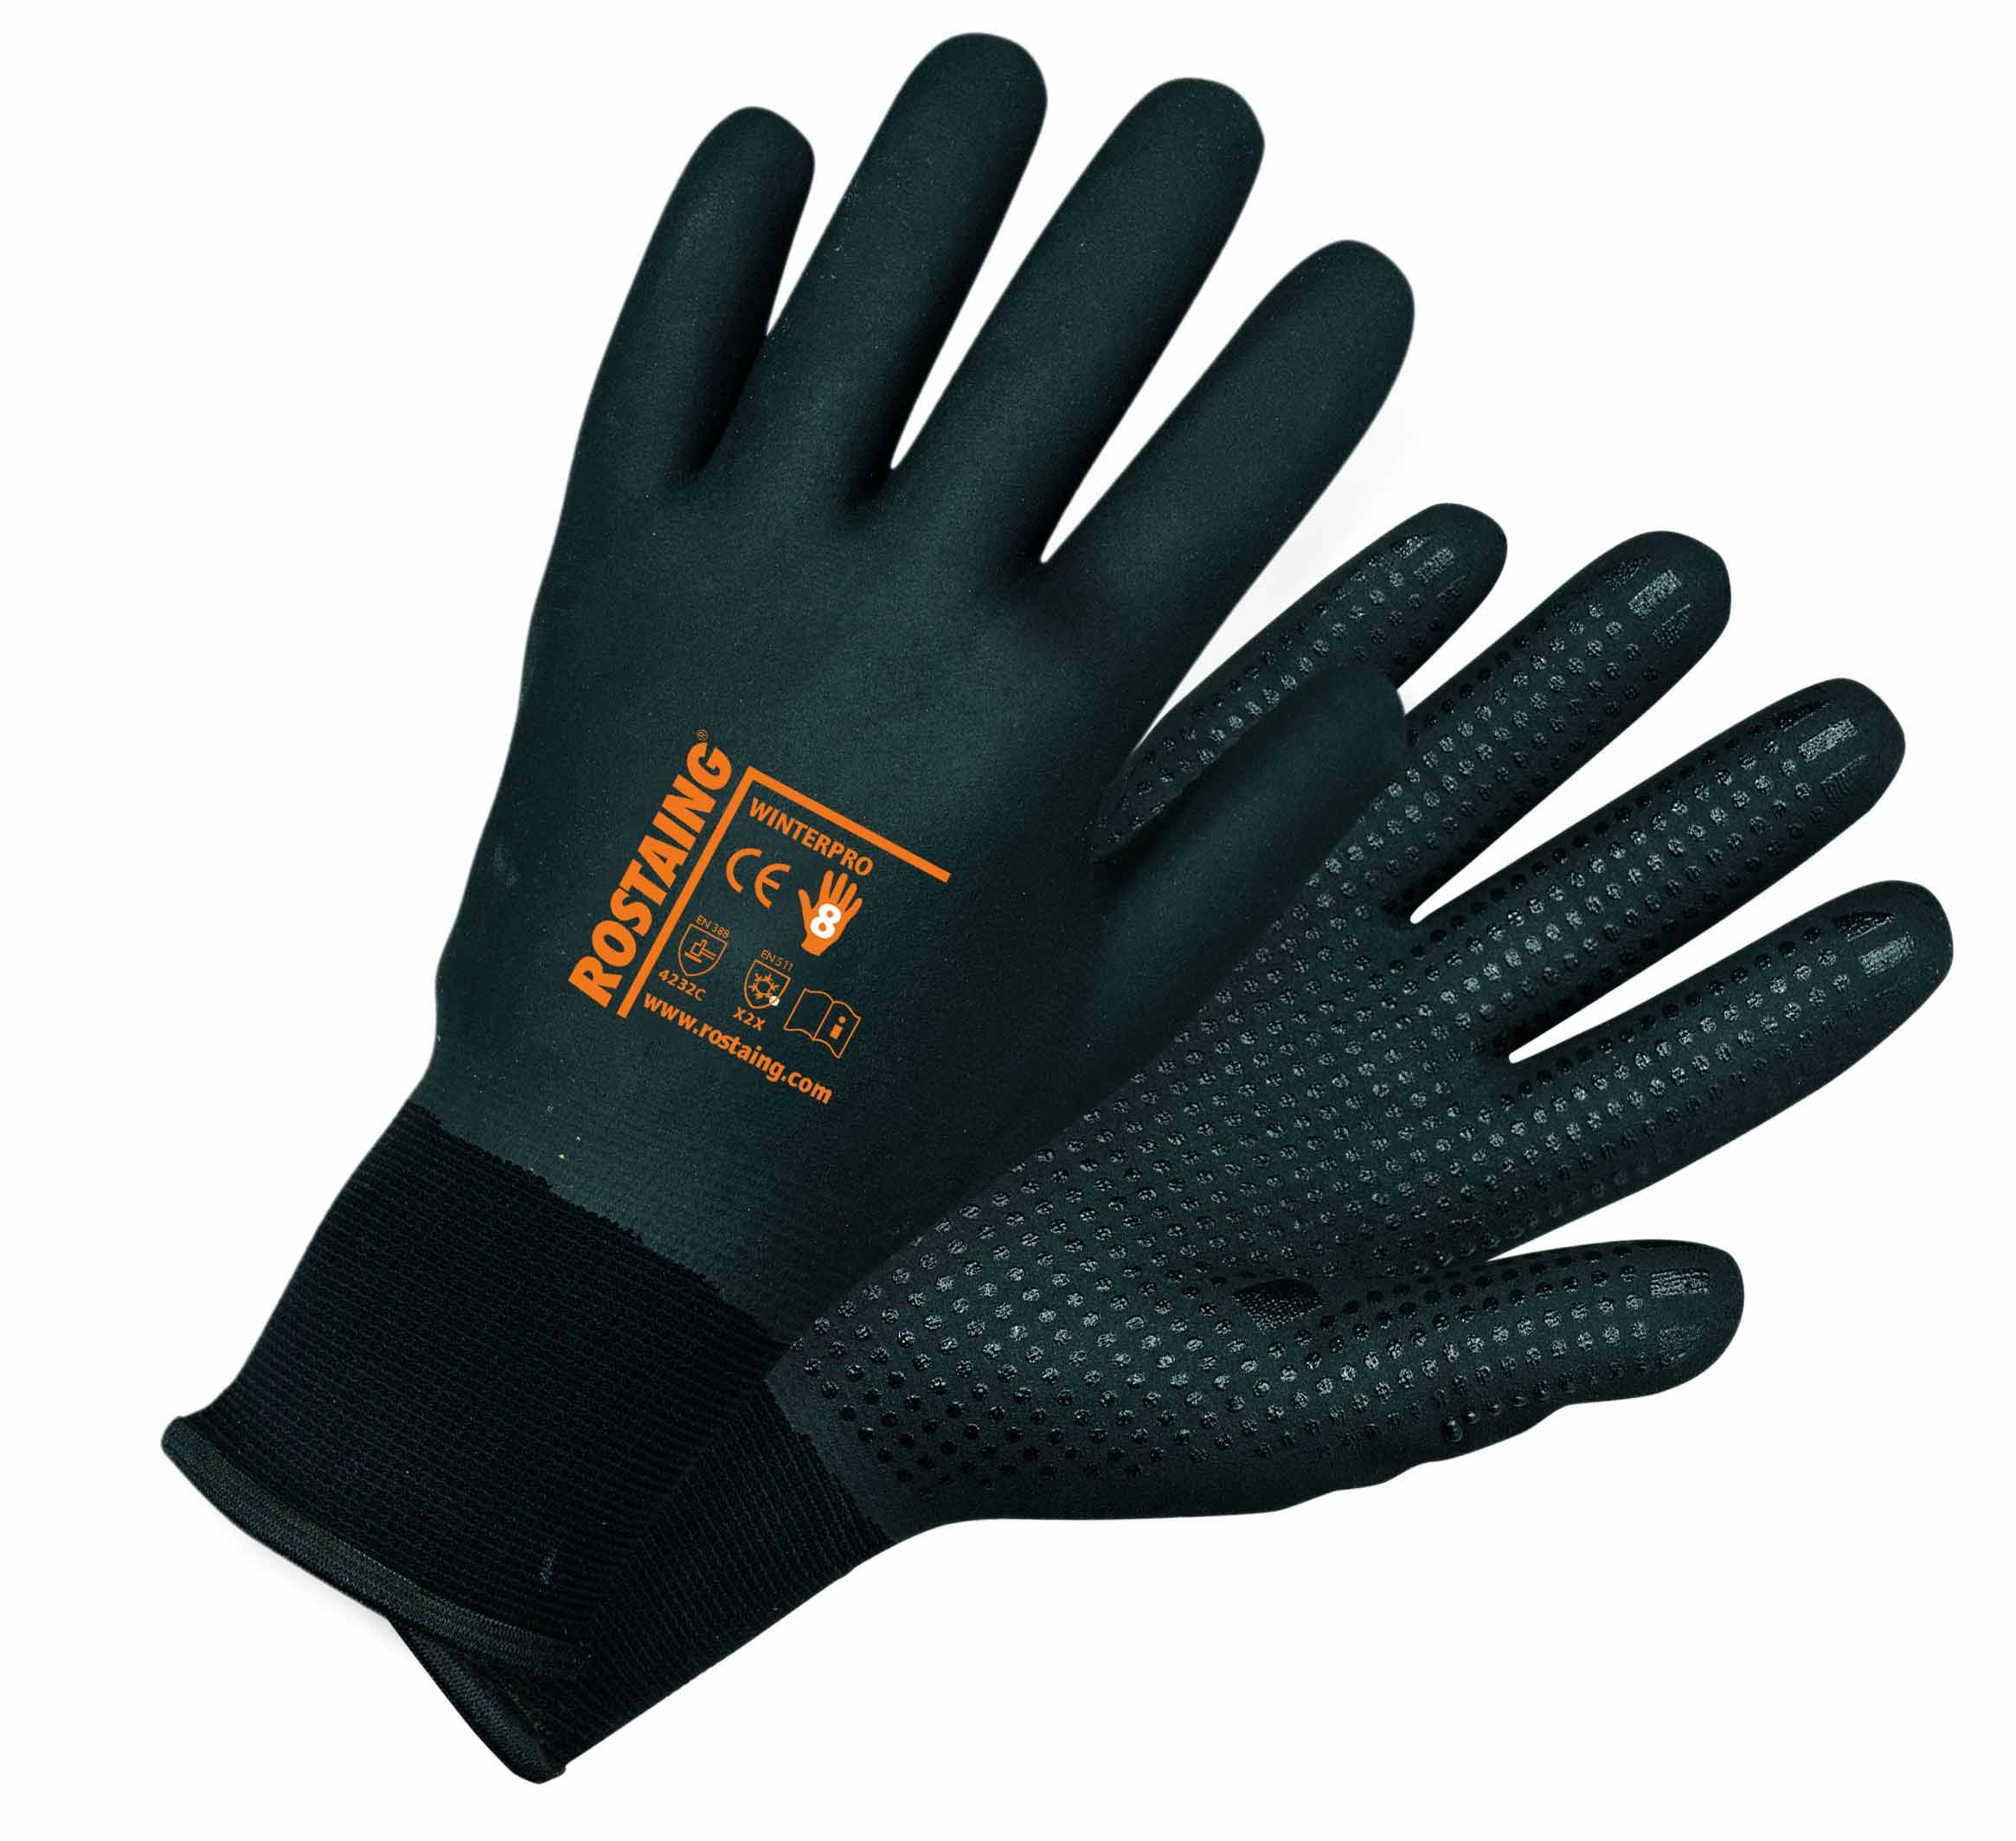 WINTERPRO gant protection pour tous les travaux d'hiver en milieu